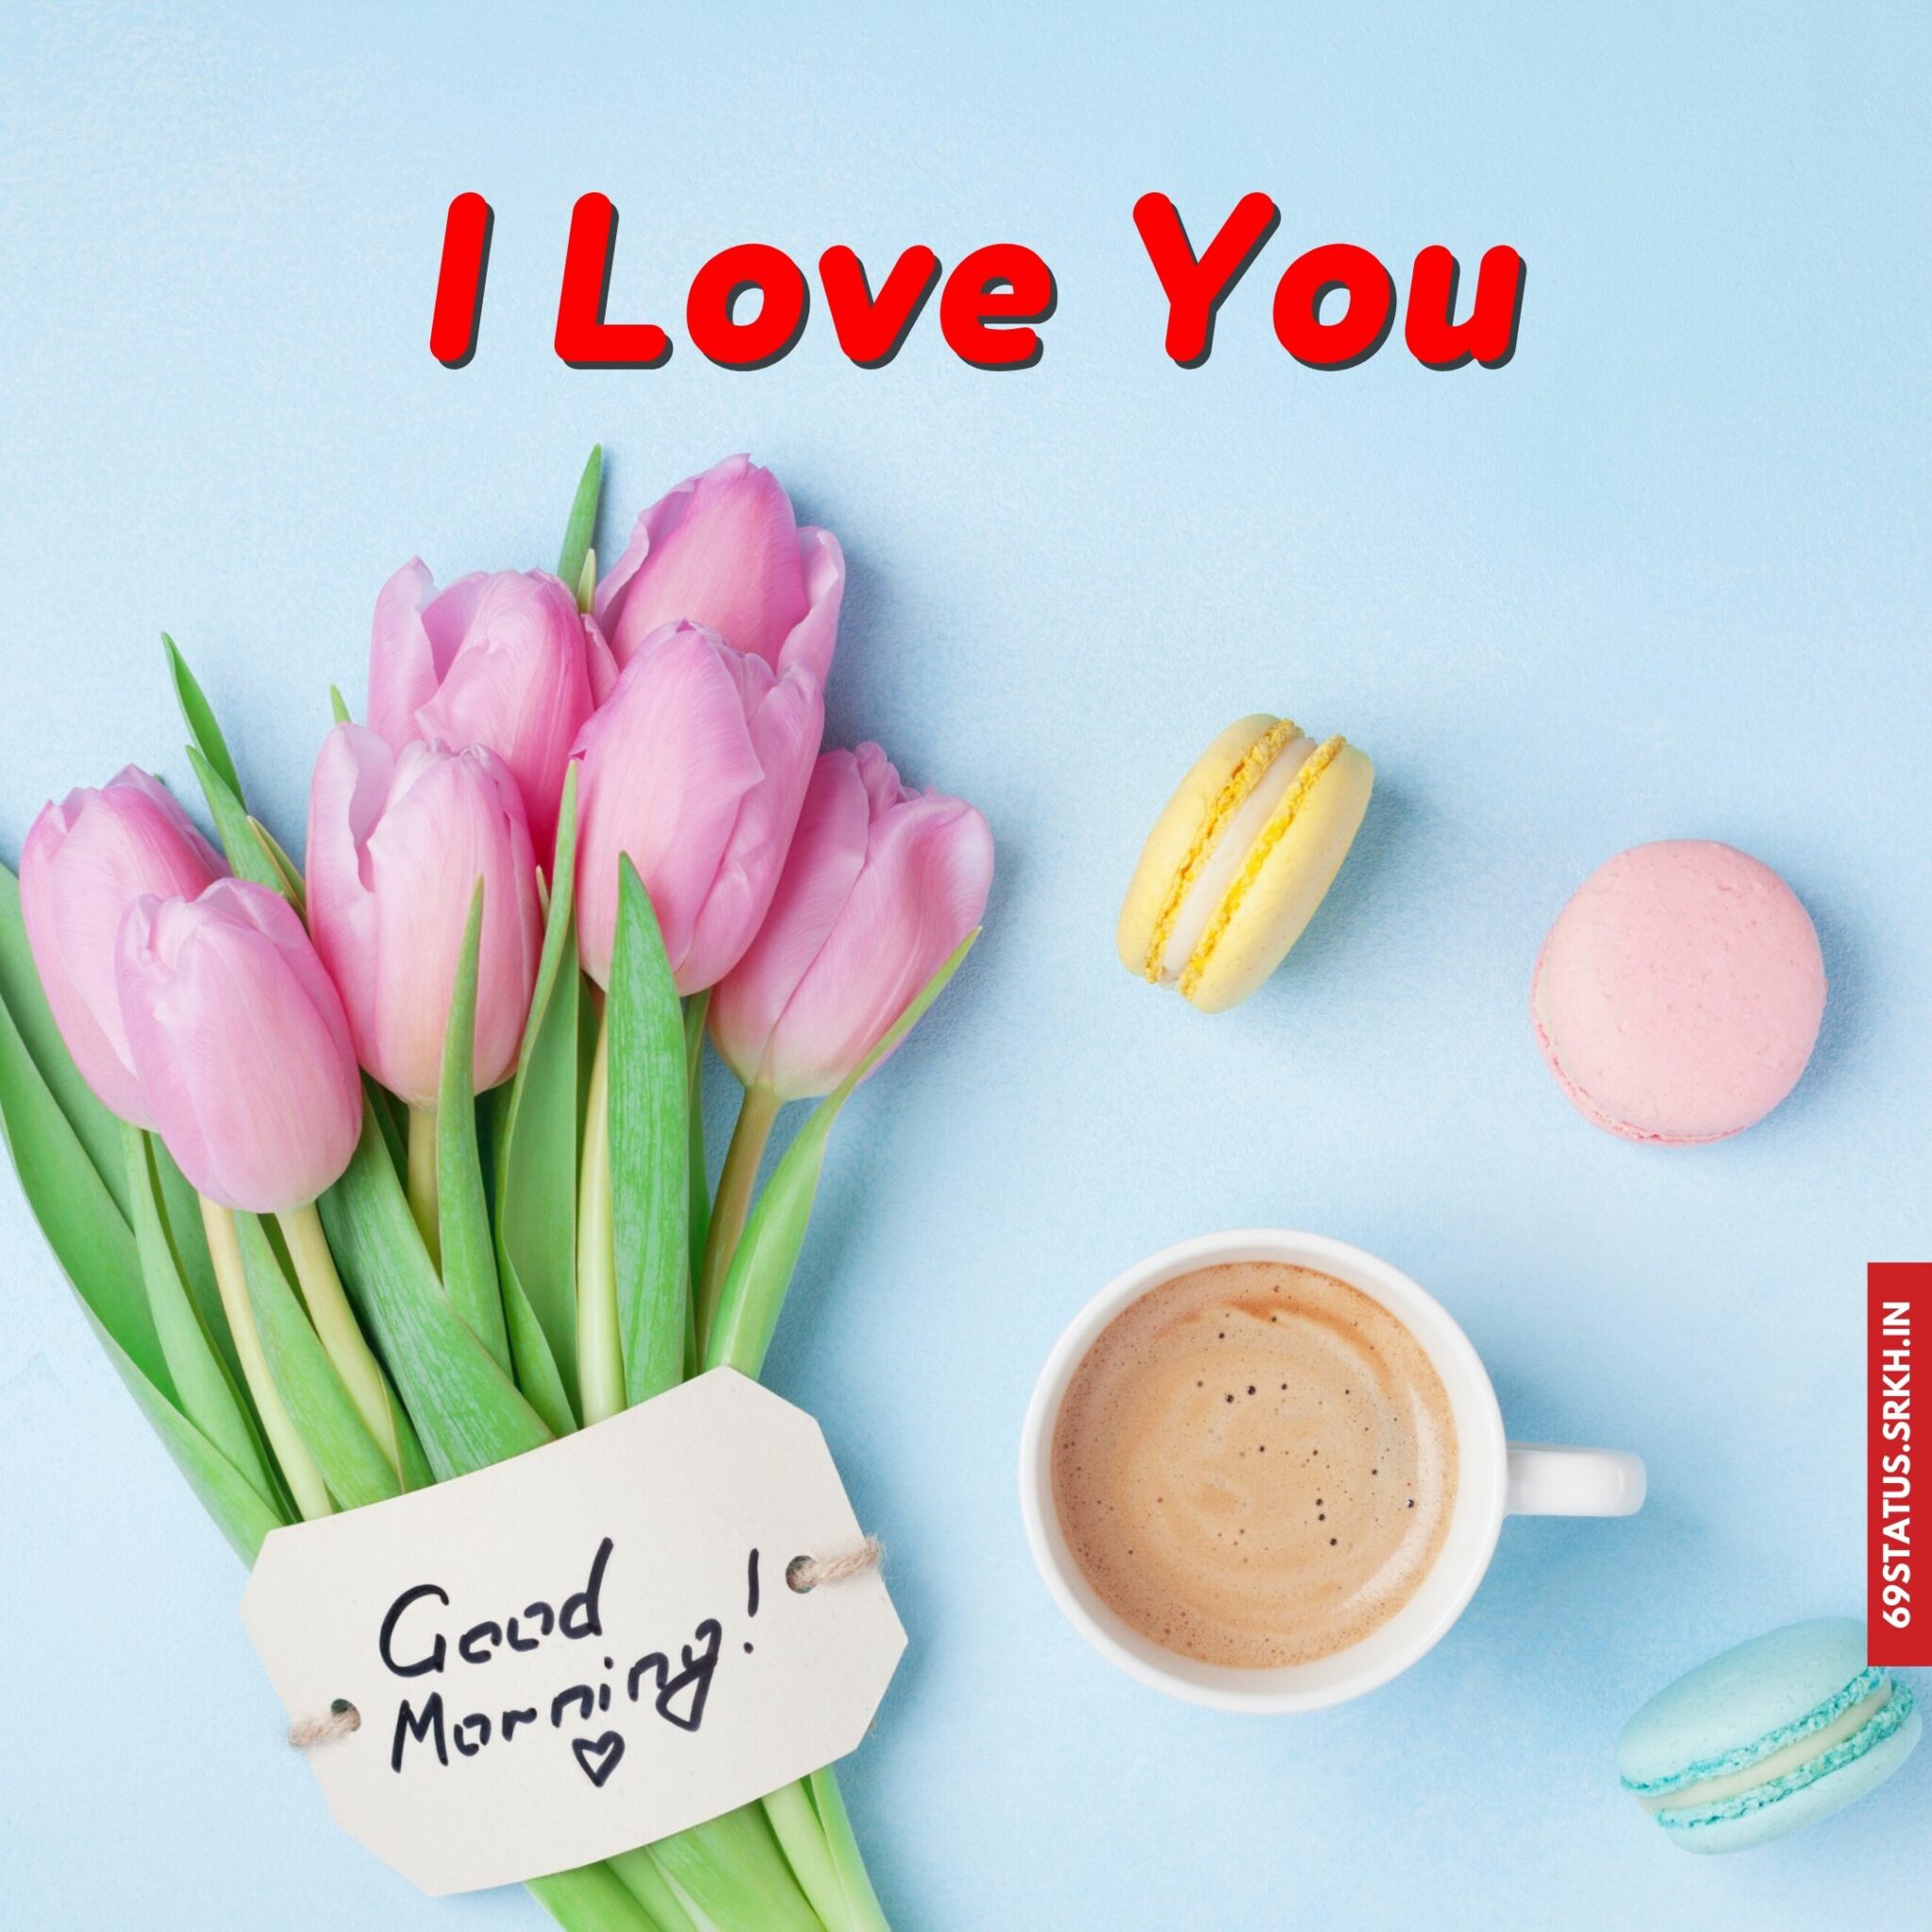 🔥 I Love You good morning images Download free - Images SRkh